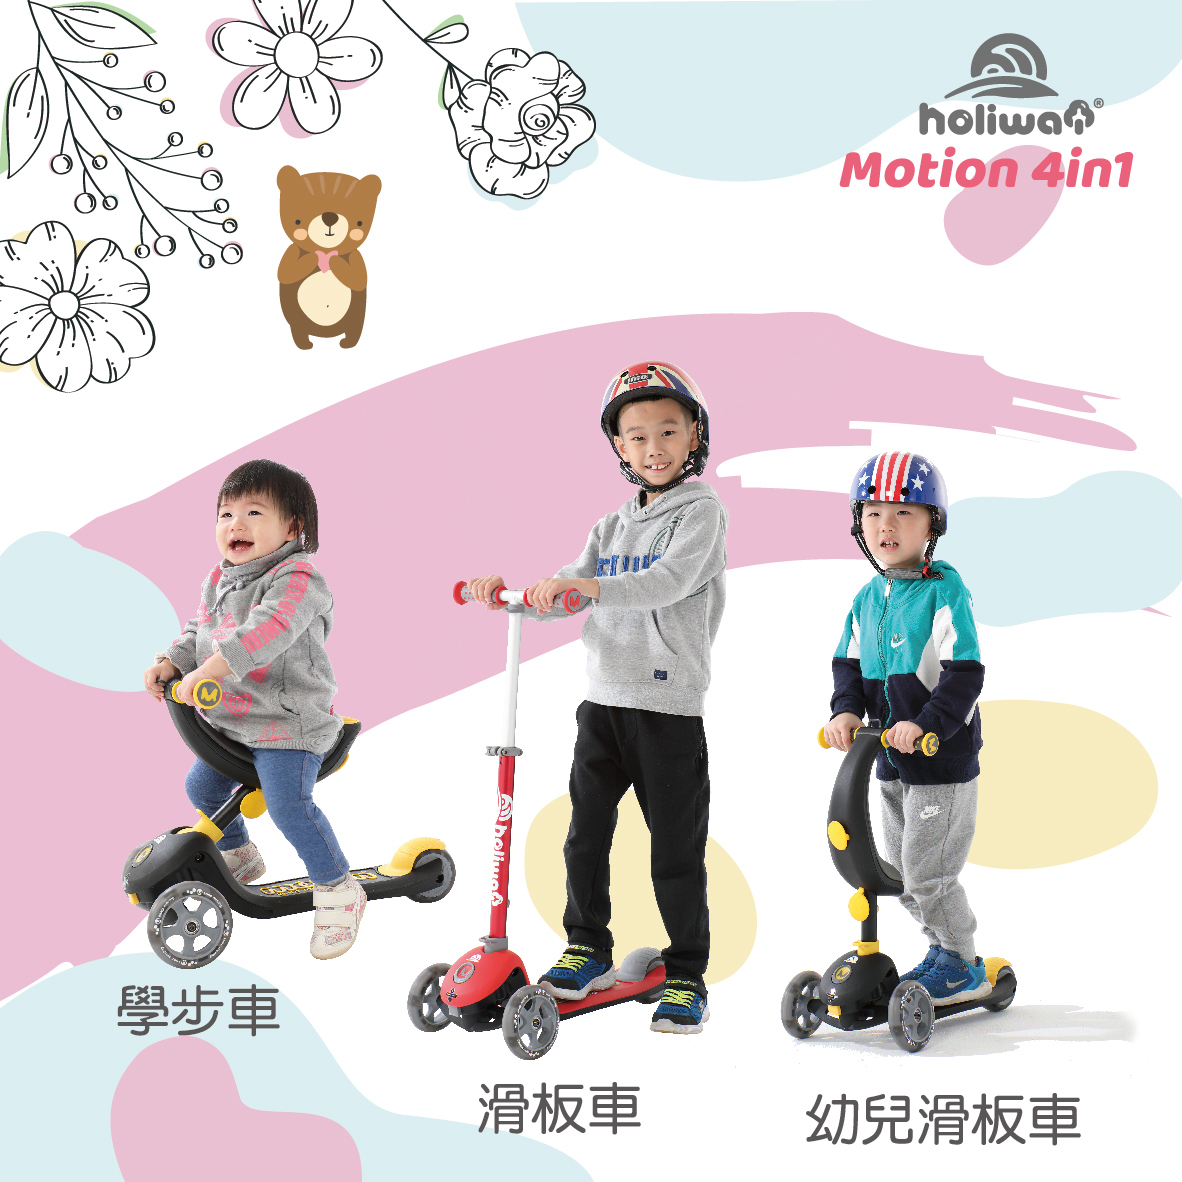 哈樂維 Motion 4in1 全功能學步滑板車